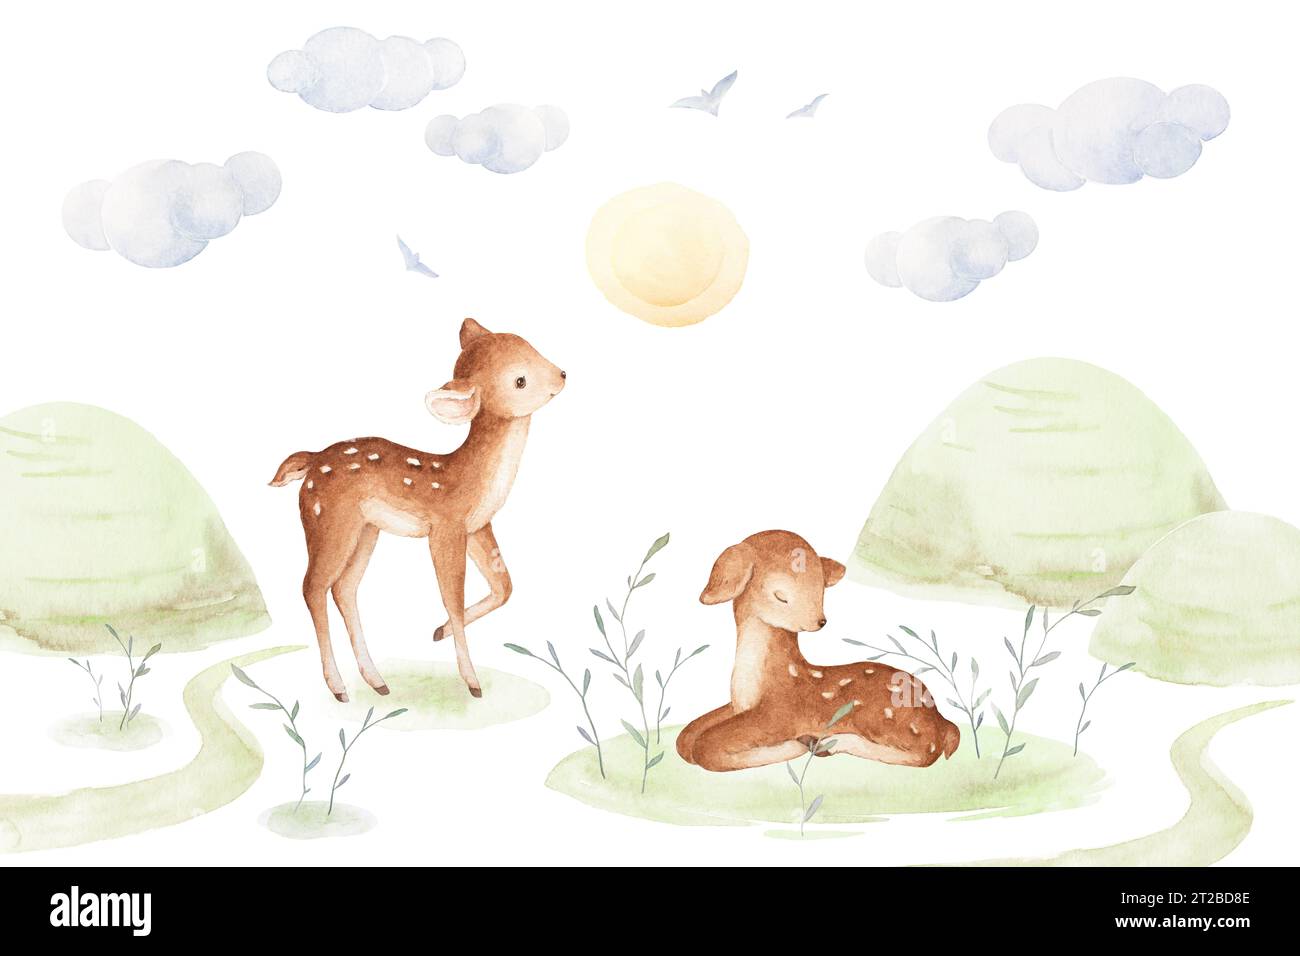 Morning Forest Illustrationen, Baby Deer Aquarell, Vorgefertigte Komposition, Handgezeichnete Aquarellelemente, Baby Forest Animals Clipart Stockfoto